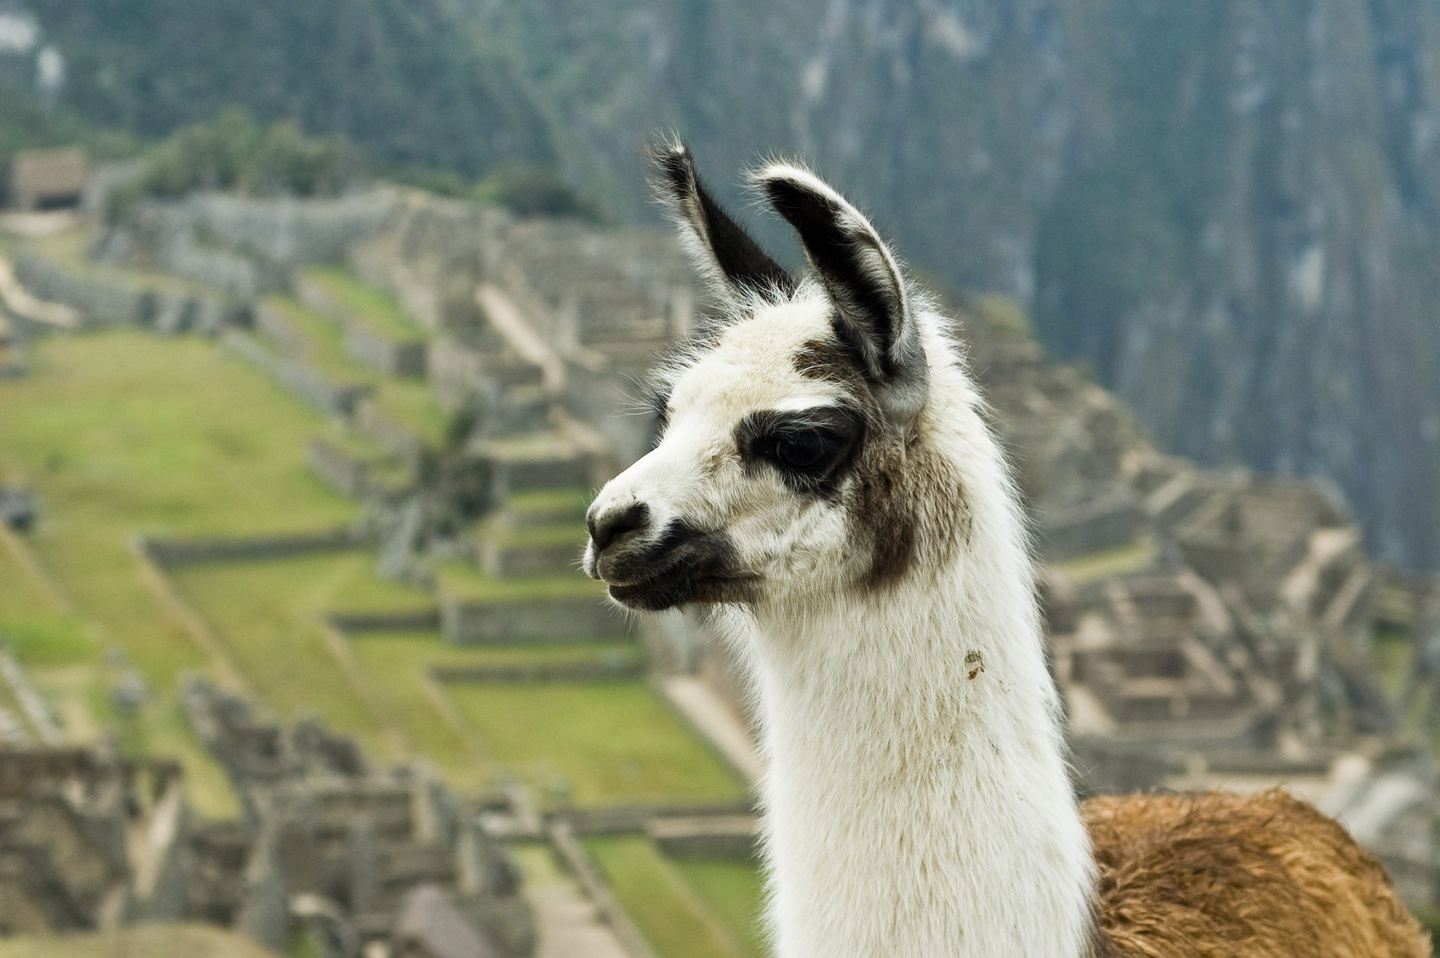 Aguas Calientes - Machu Picchu 2d-1n